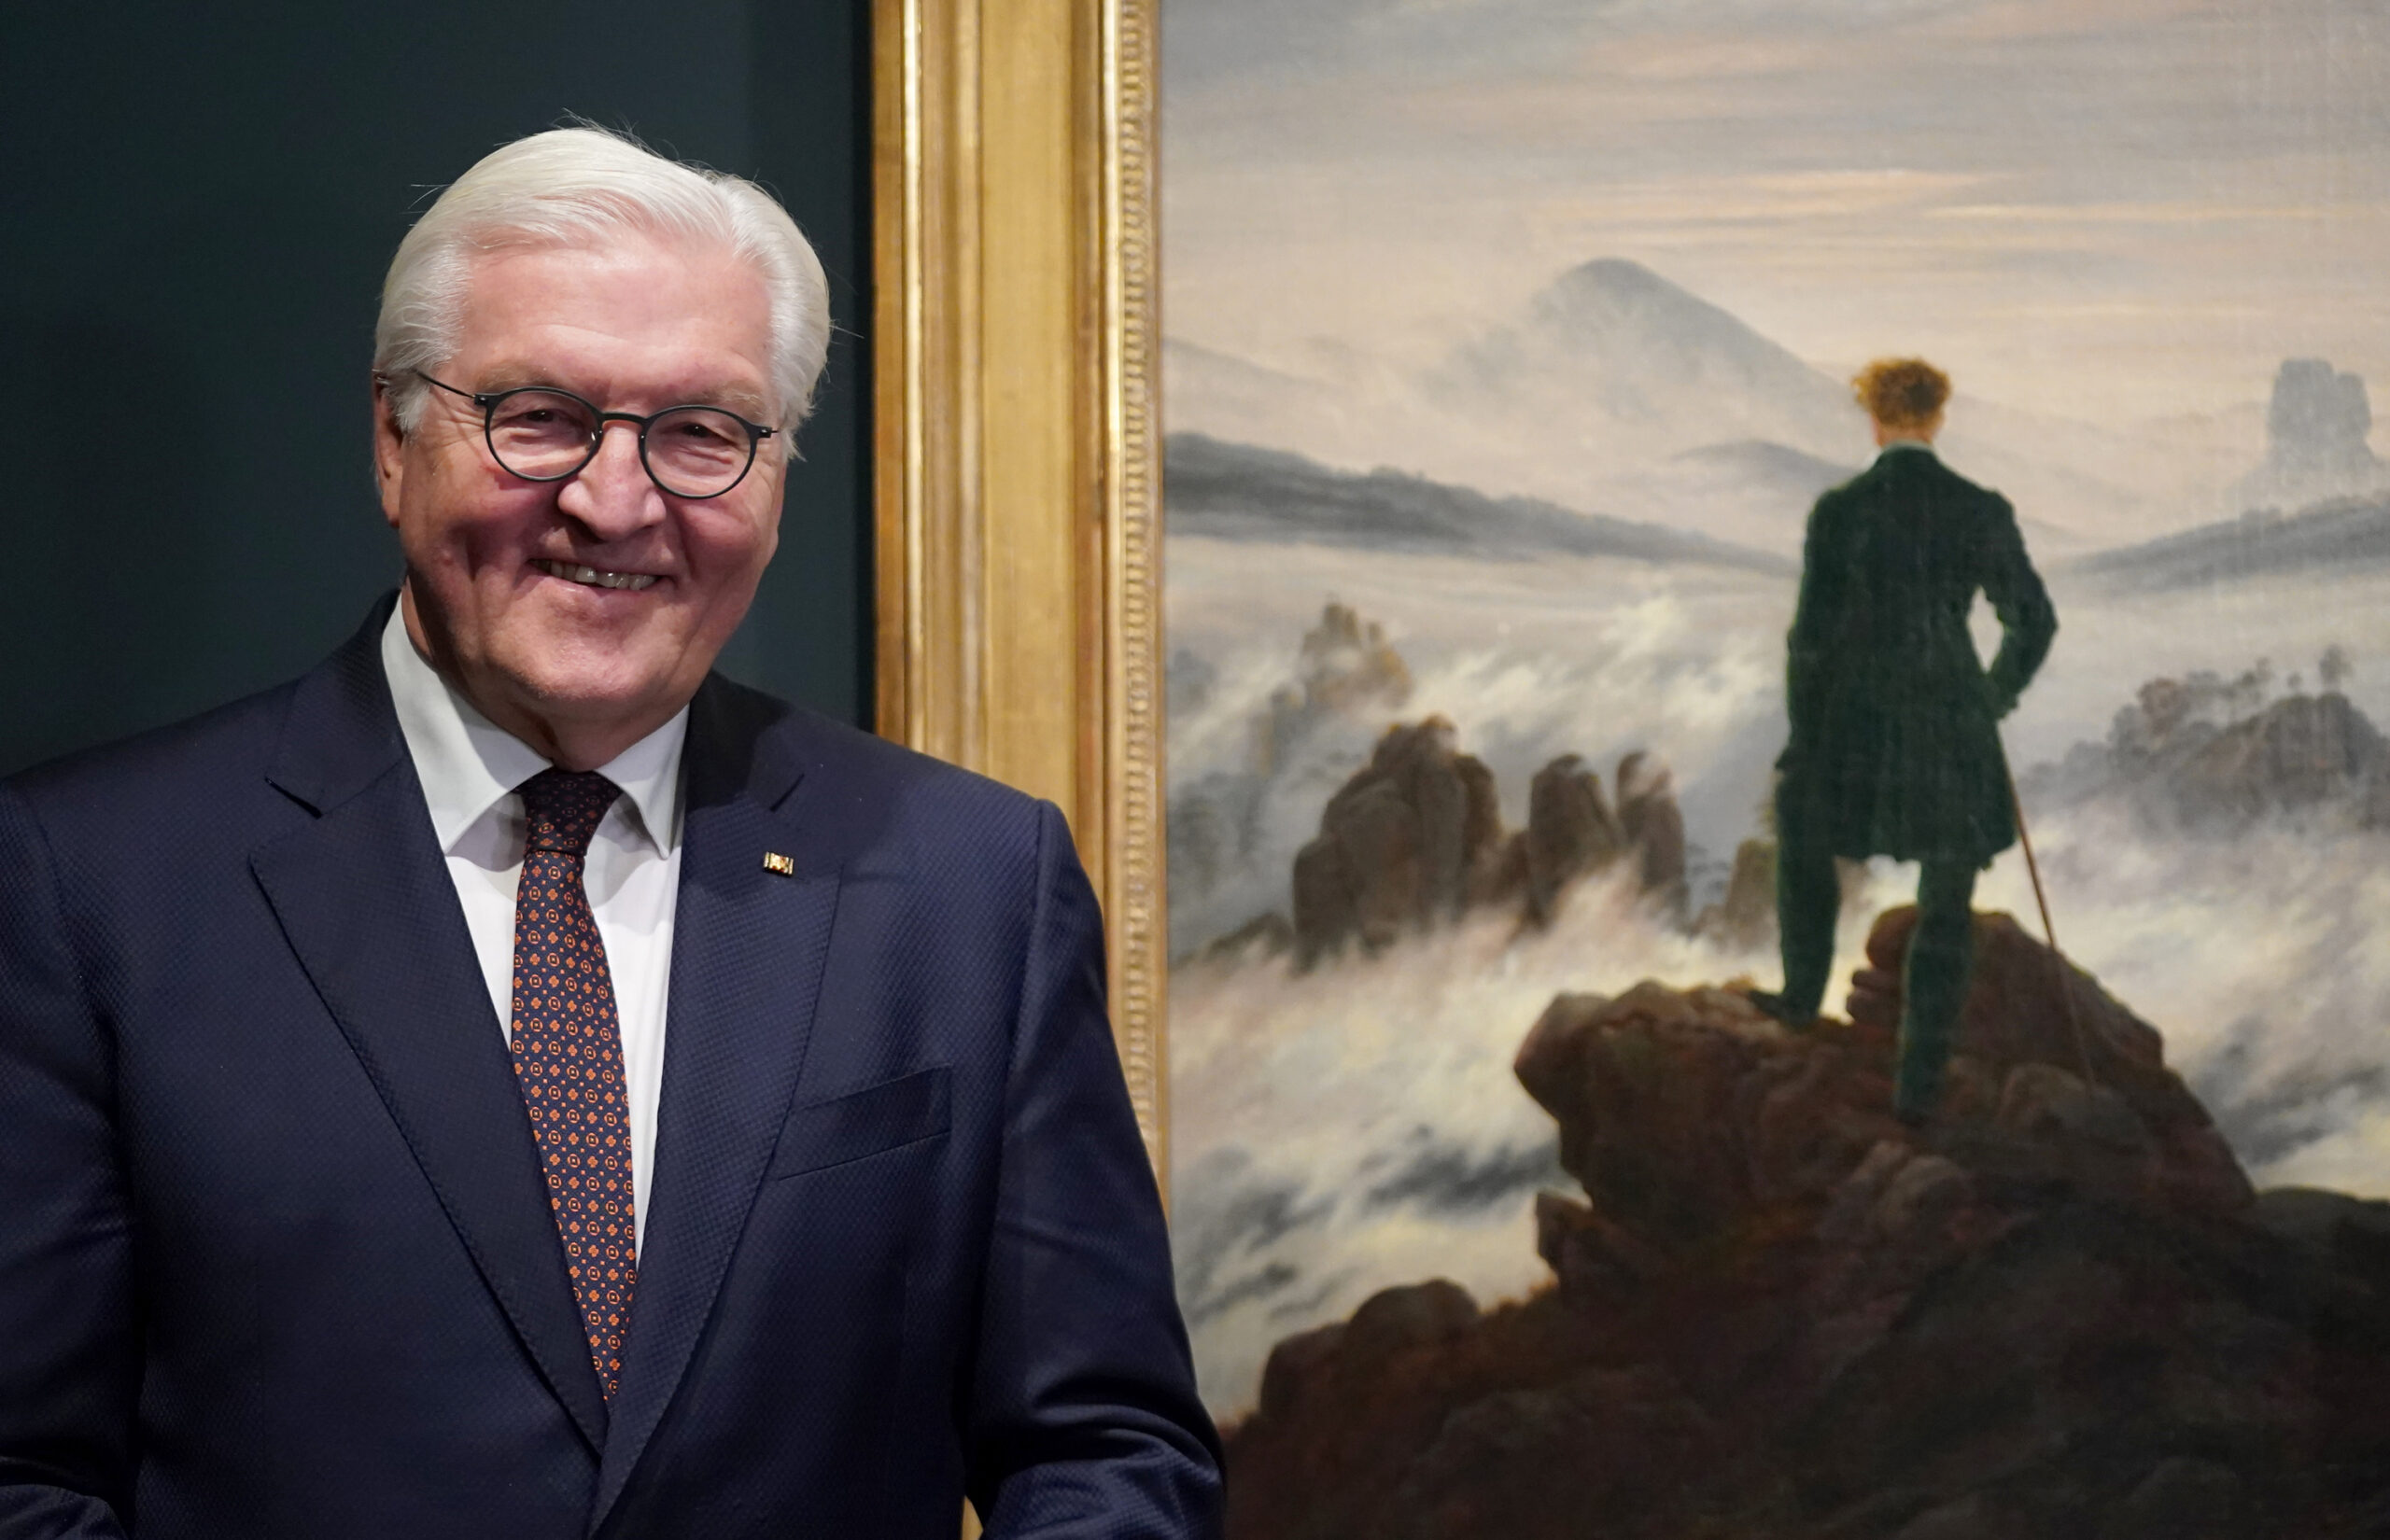 Rechts im Hintergrund das Gemälde, links davor lächelnd Steinmeier